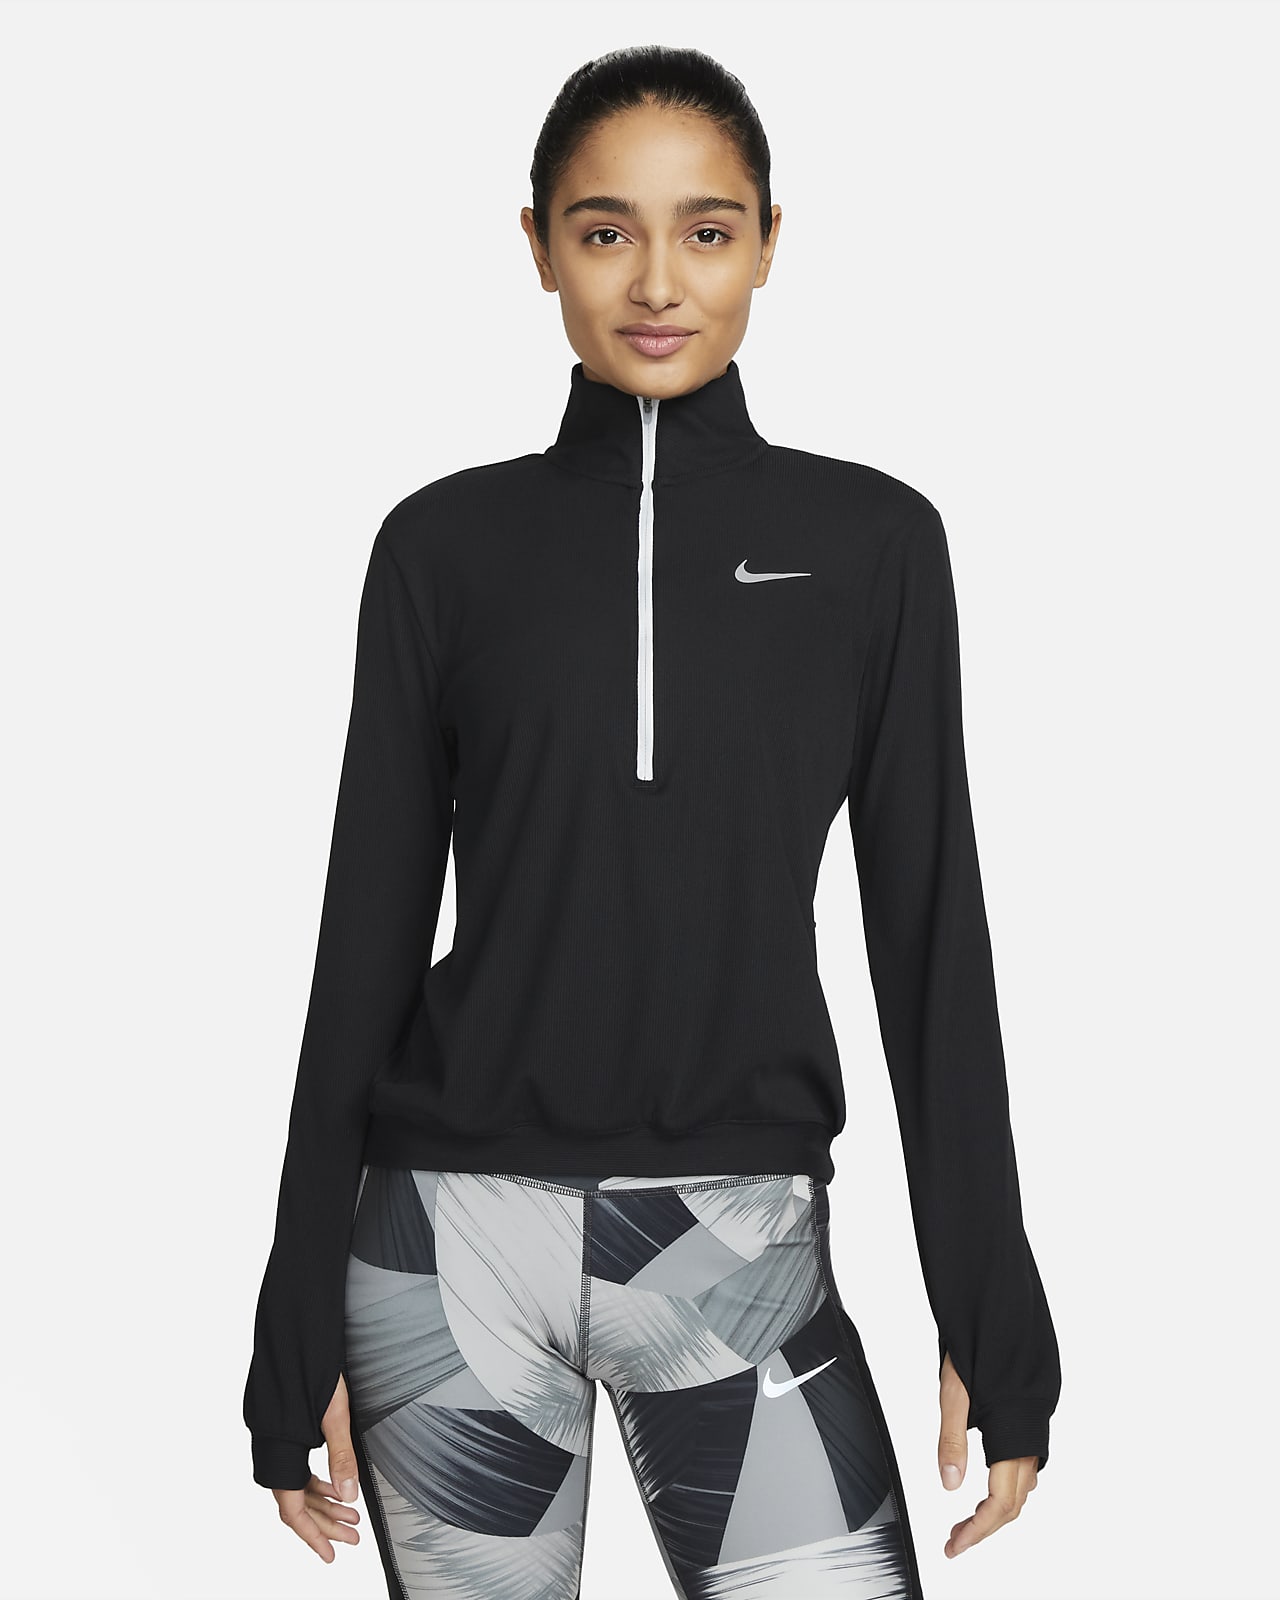 Nike Dri-FIT-mellemlag til løb til kvinder